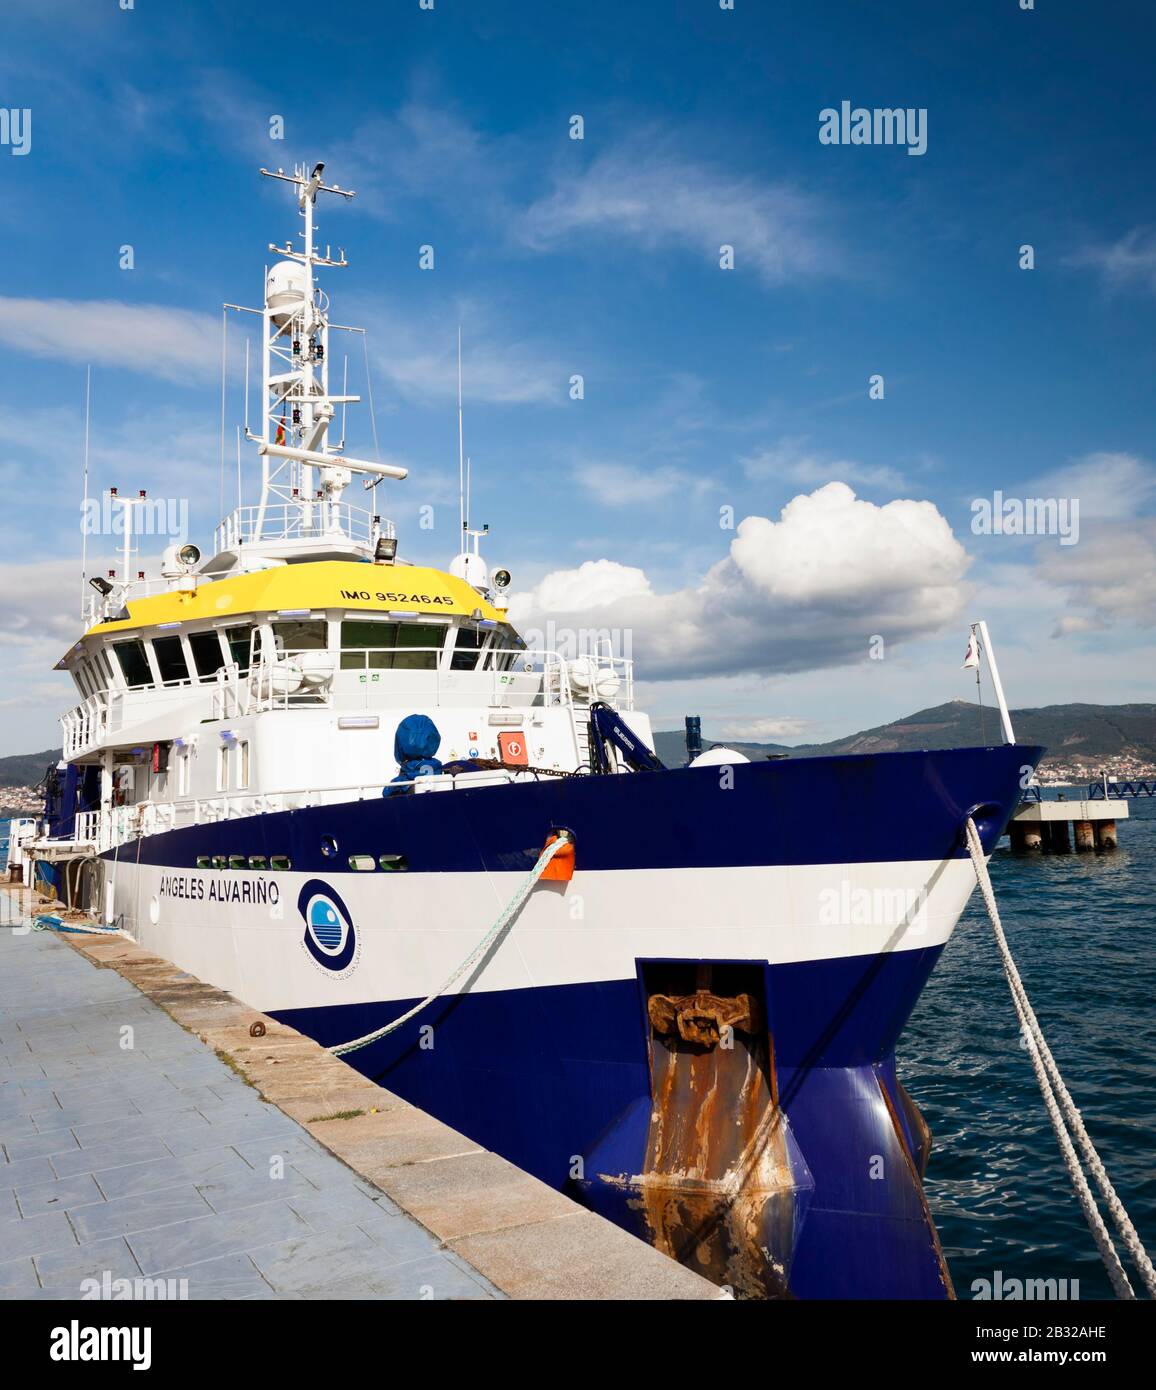 Vigo, Spanien - 24. Januar 2020: Das multifunktionale ozeanographische Forschungsschiff von Angeles Alvariño, das am 24. Januar 2020 in Vigo, Pontevedr, im Hafen festgemacht wurde Stockfoto